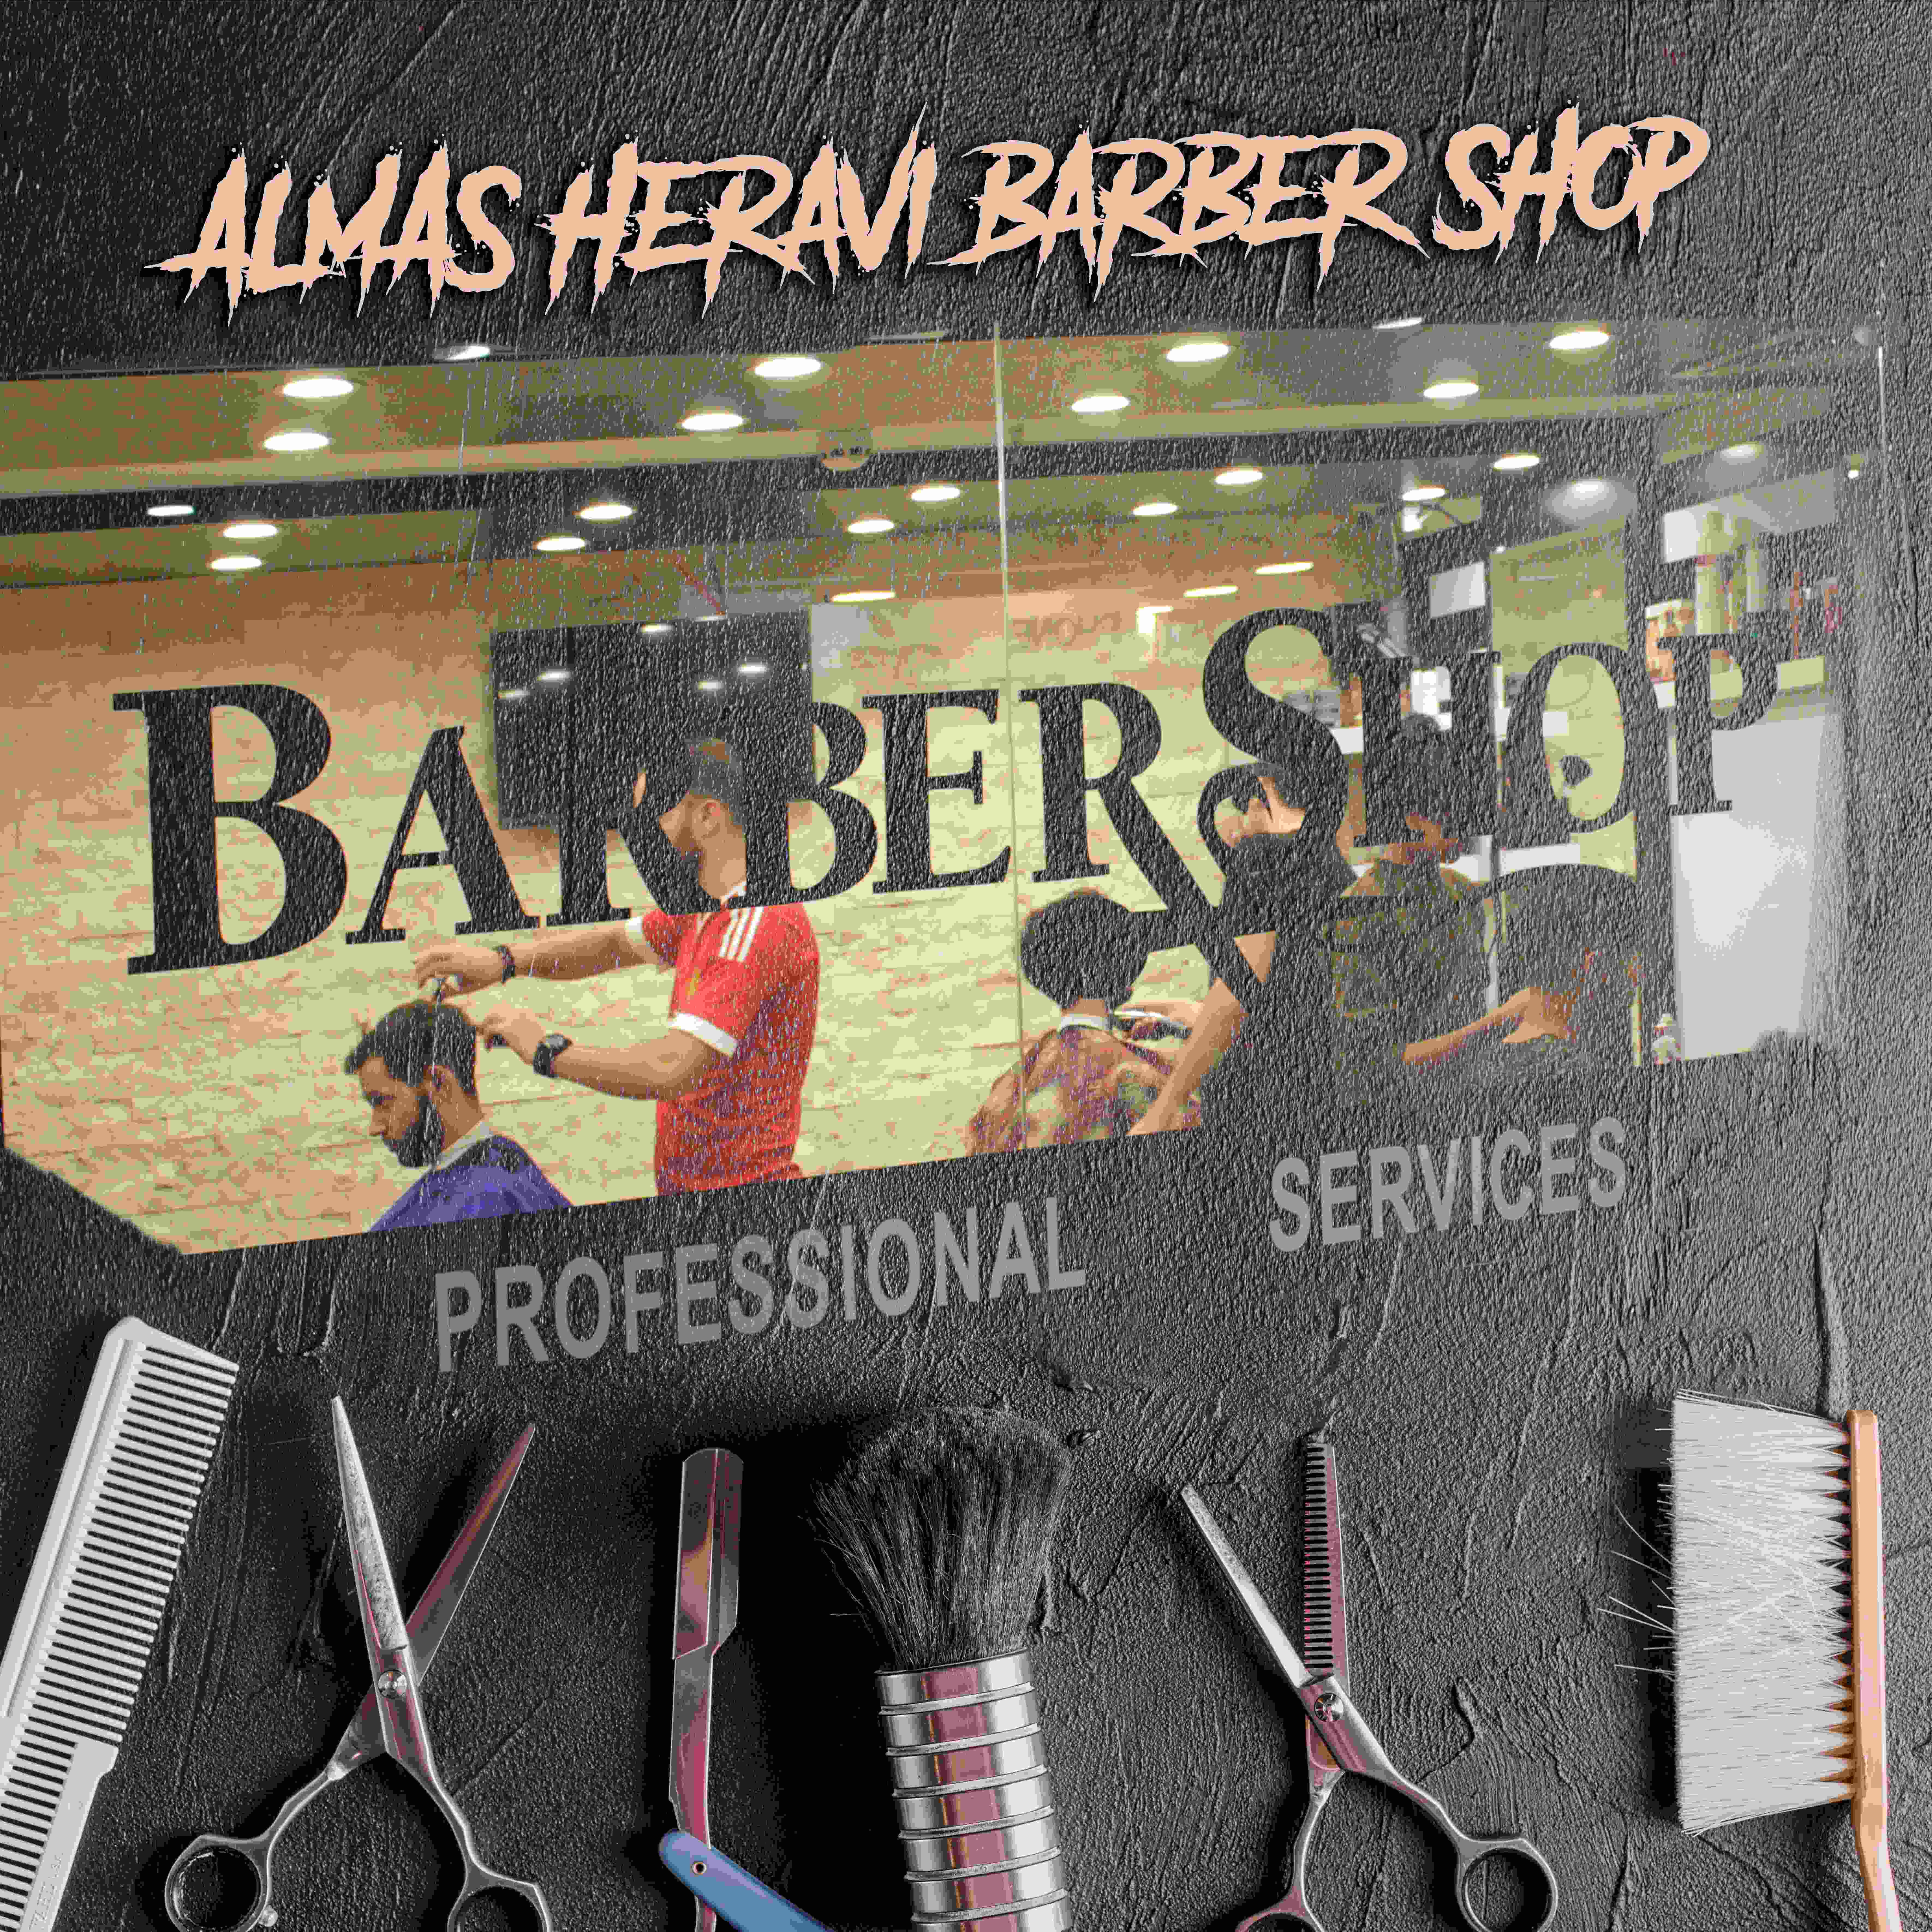 Almasheravi-barber shop1